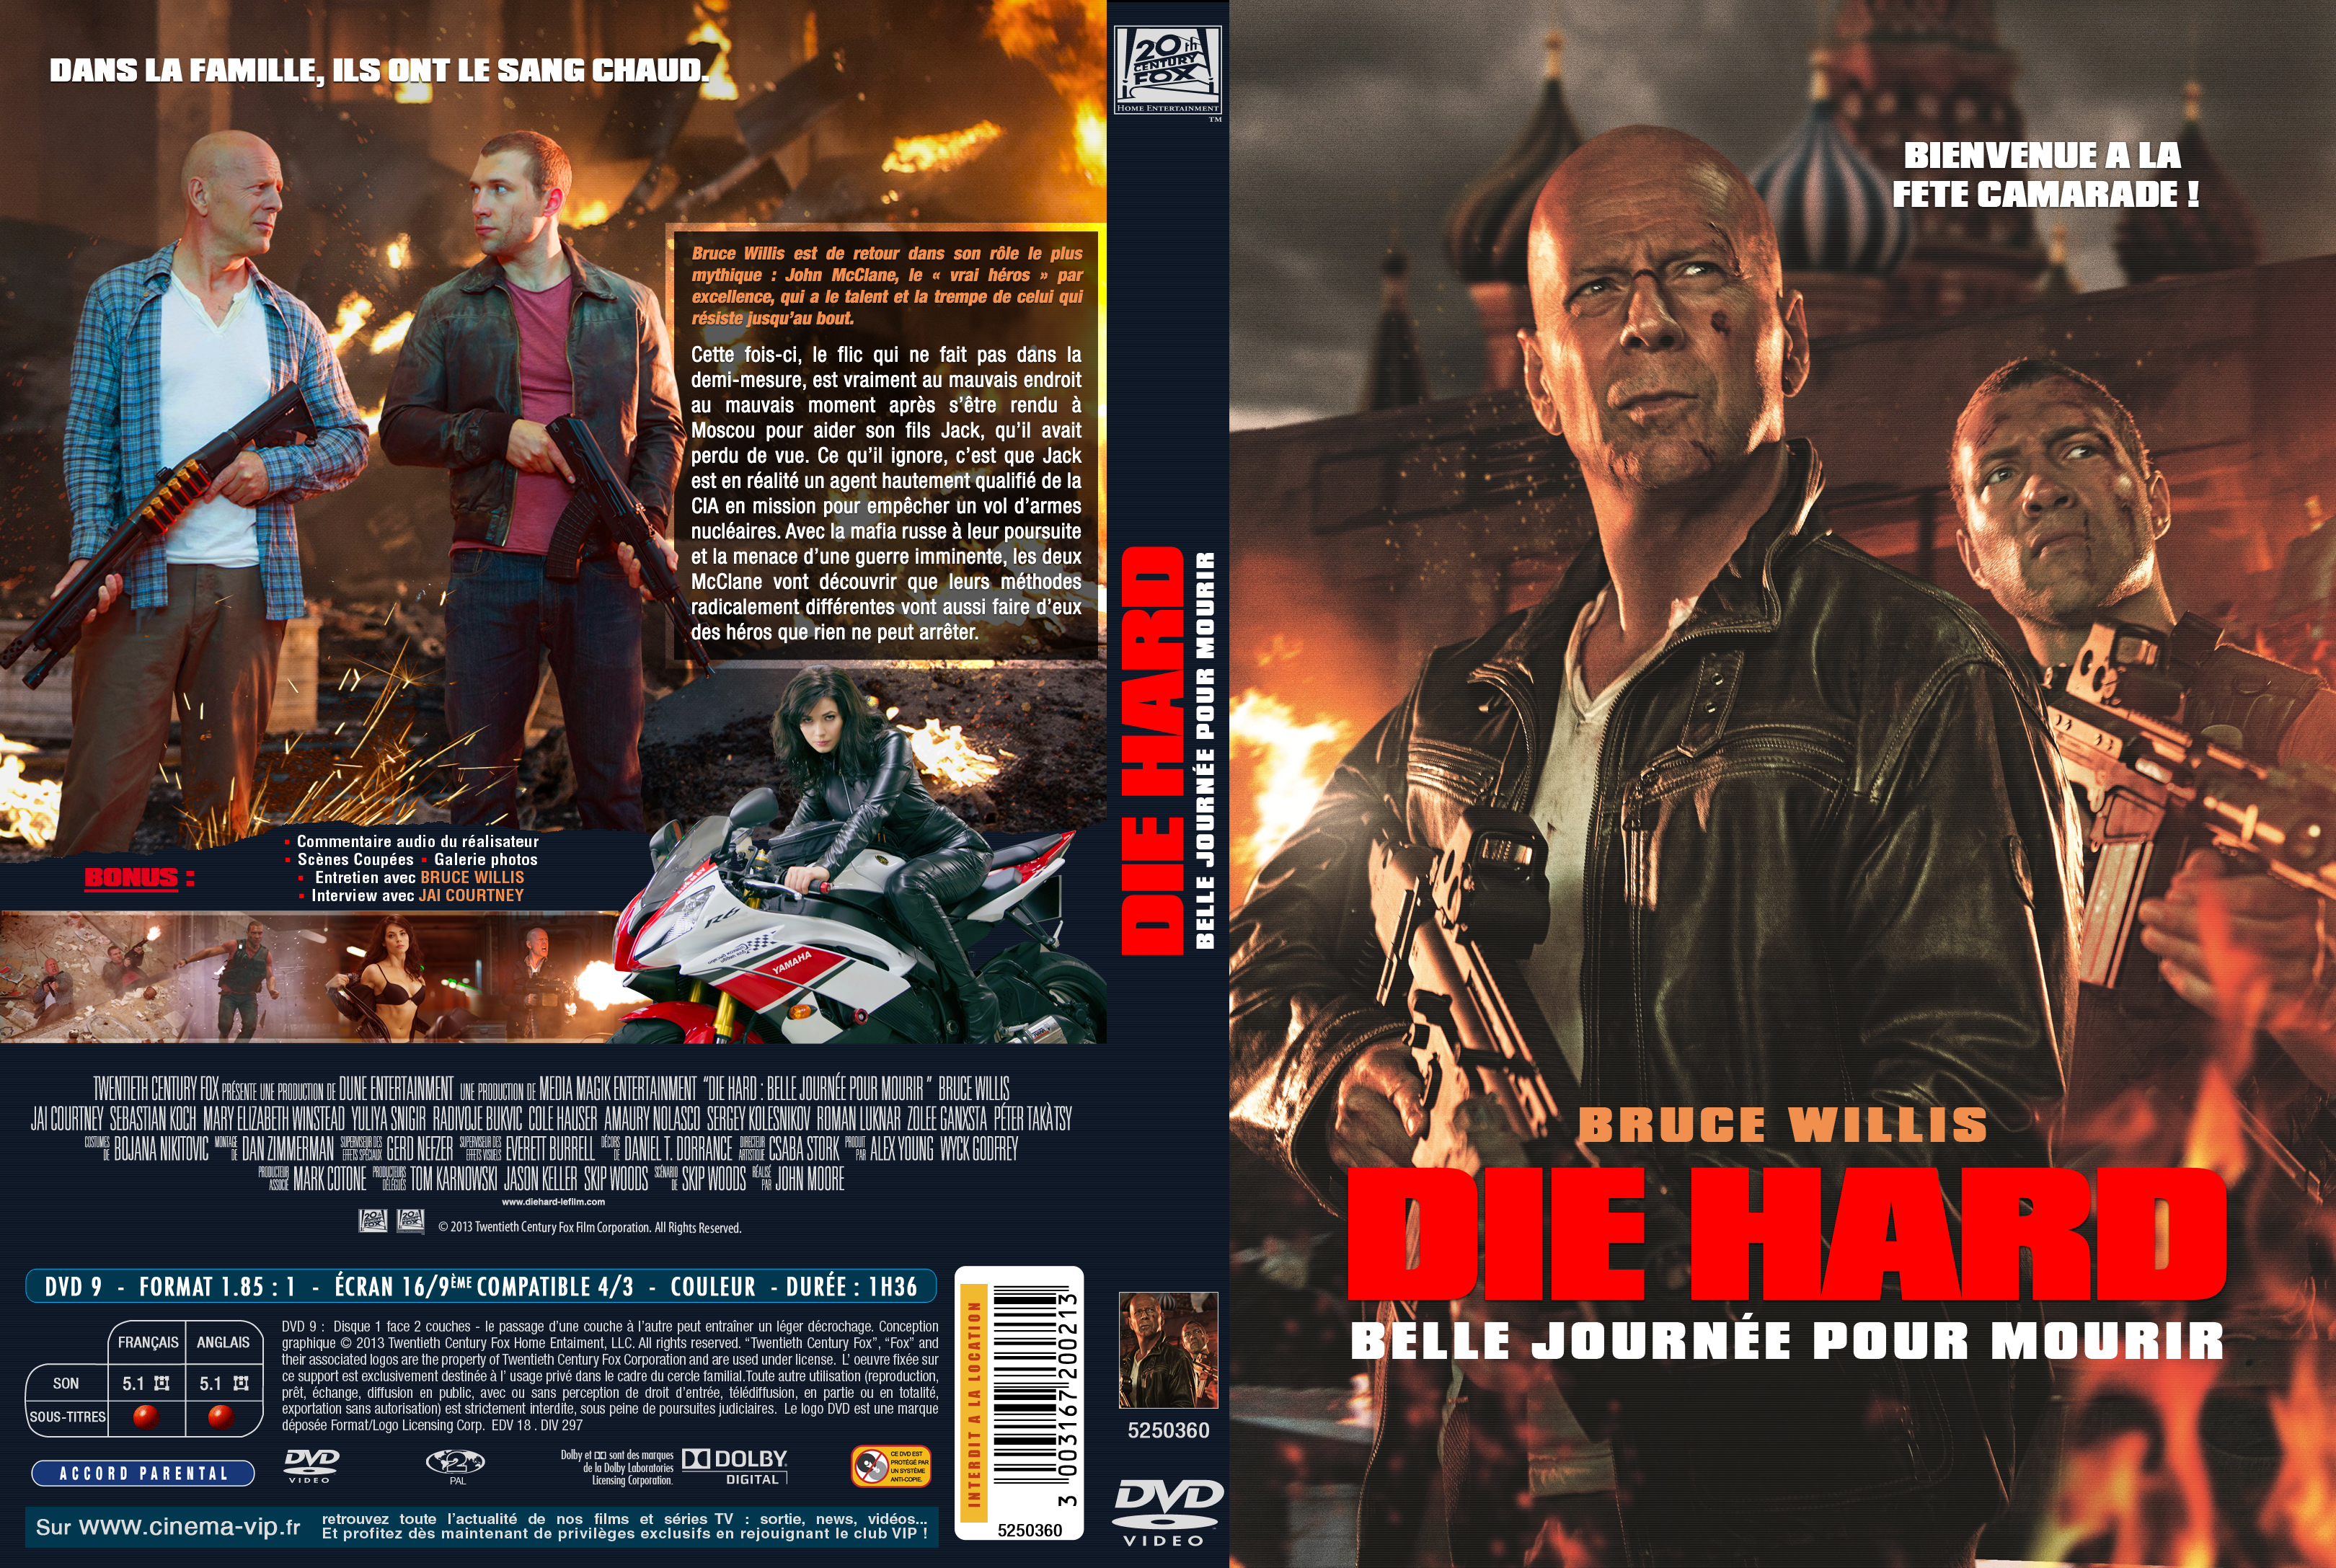 Jaquette DVD Die Hard Belle journe pour mourir custom v2